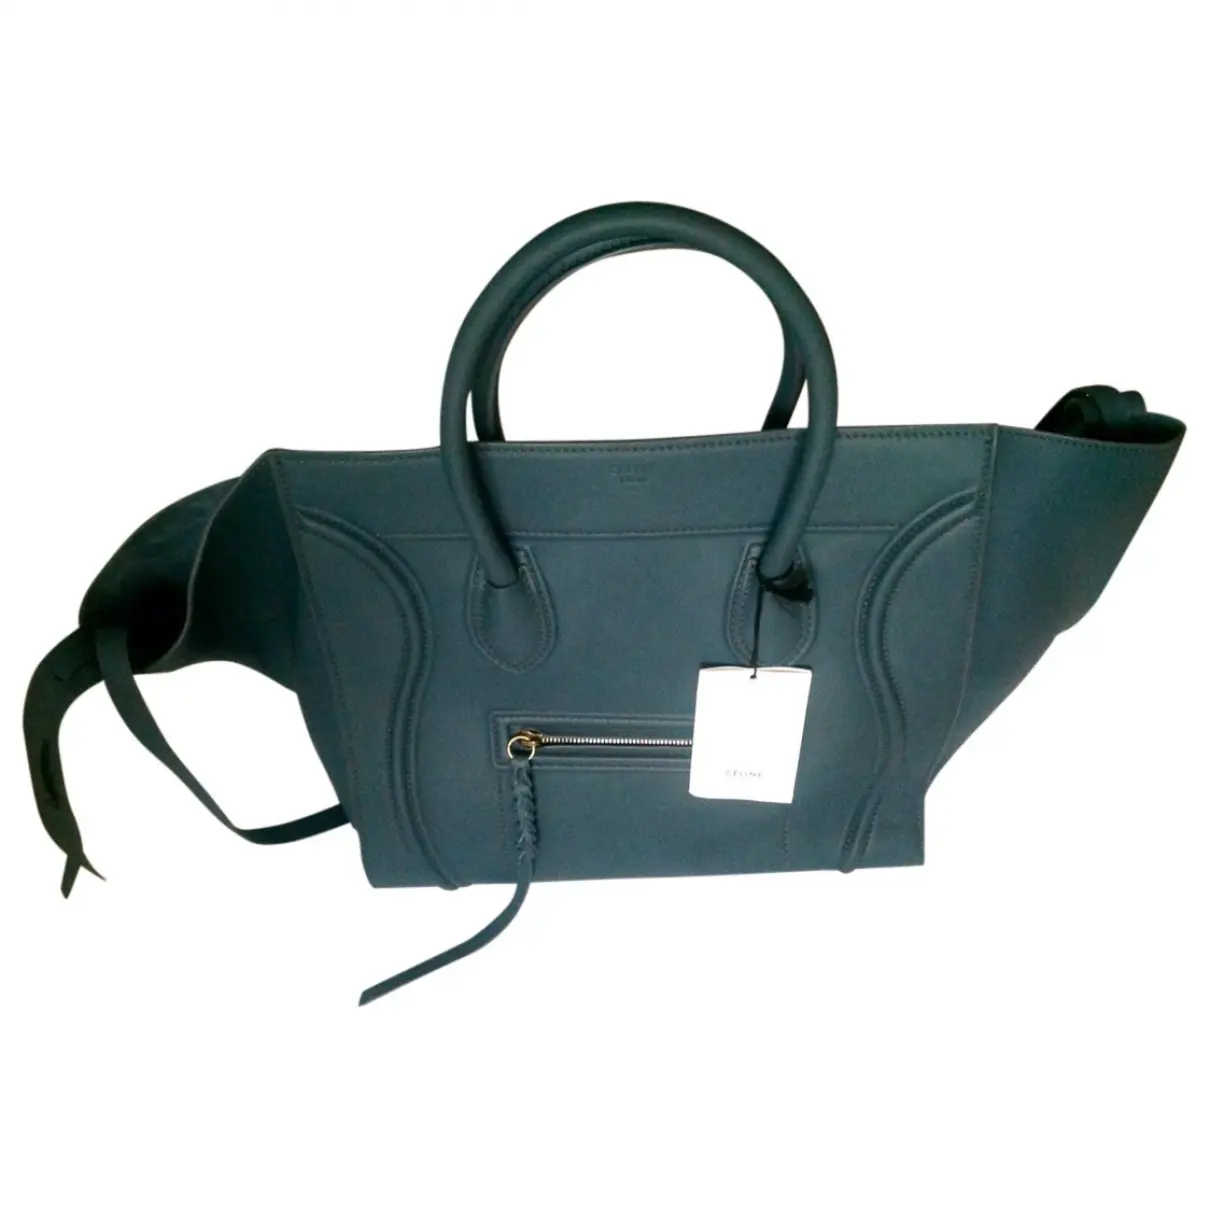 Blue Leather Handbag Cabas Celine